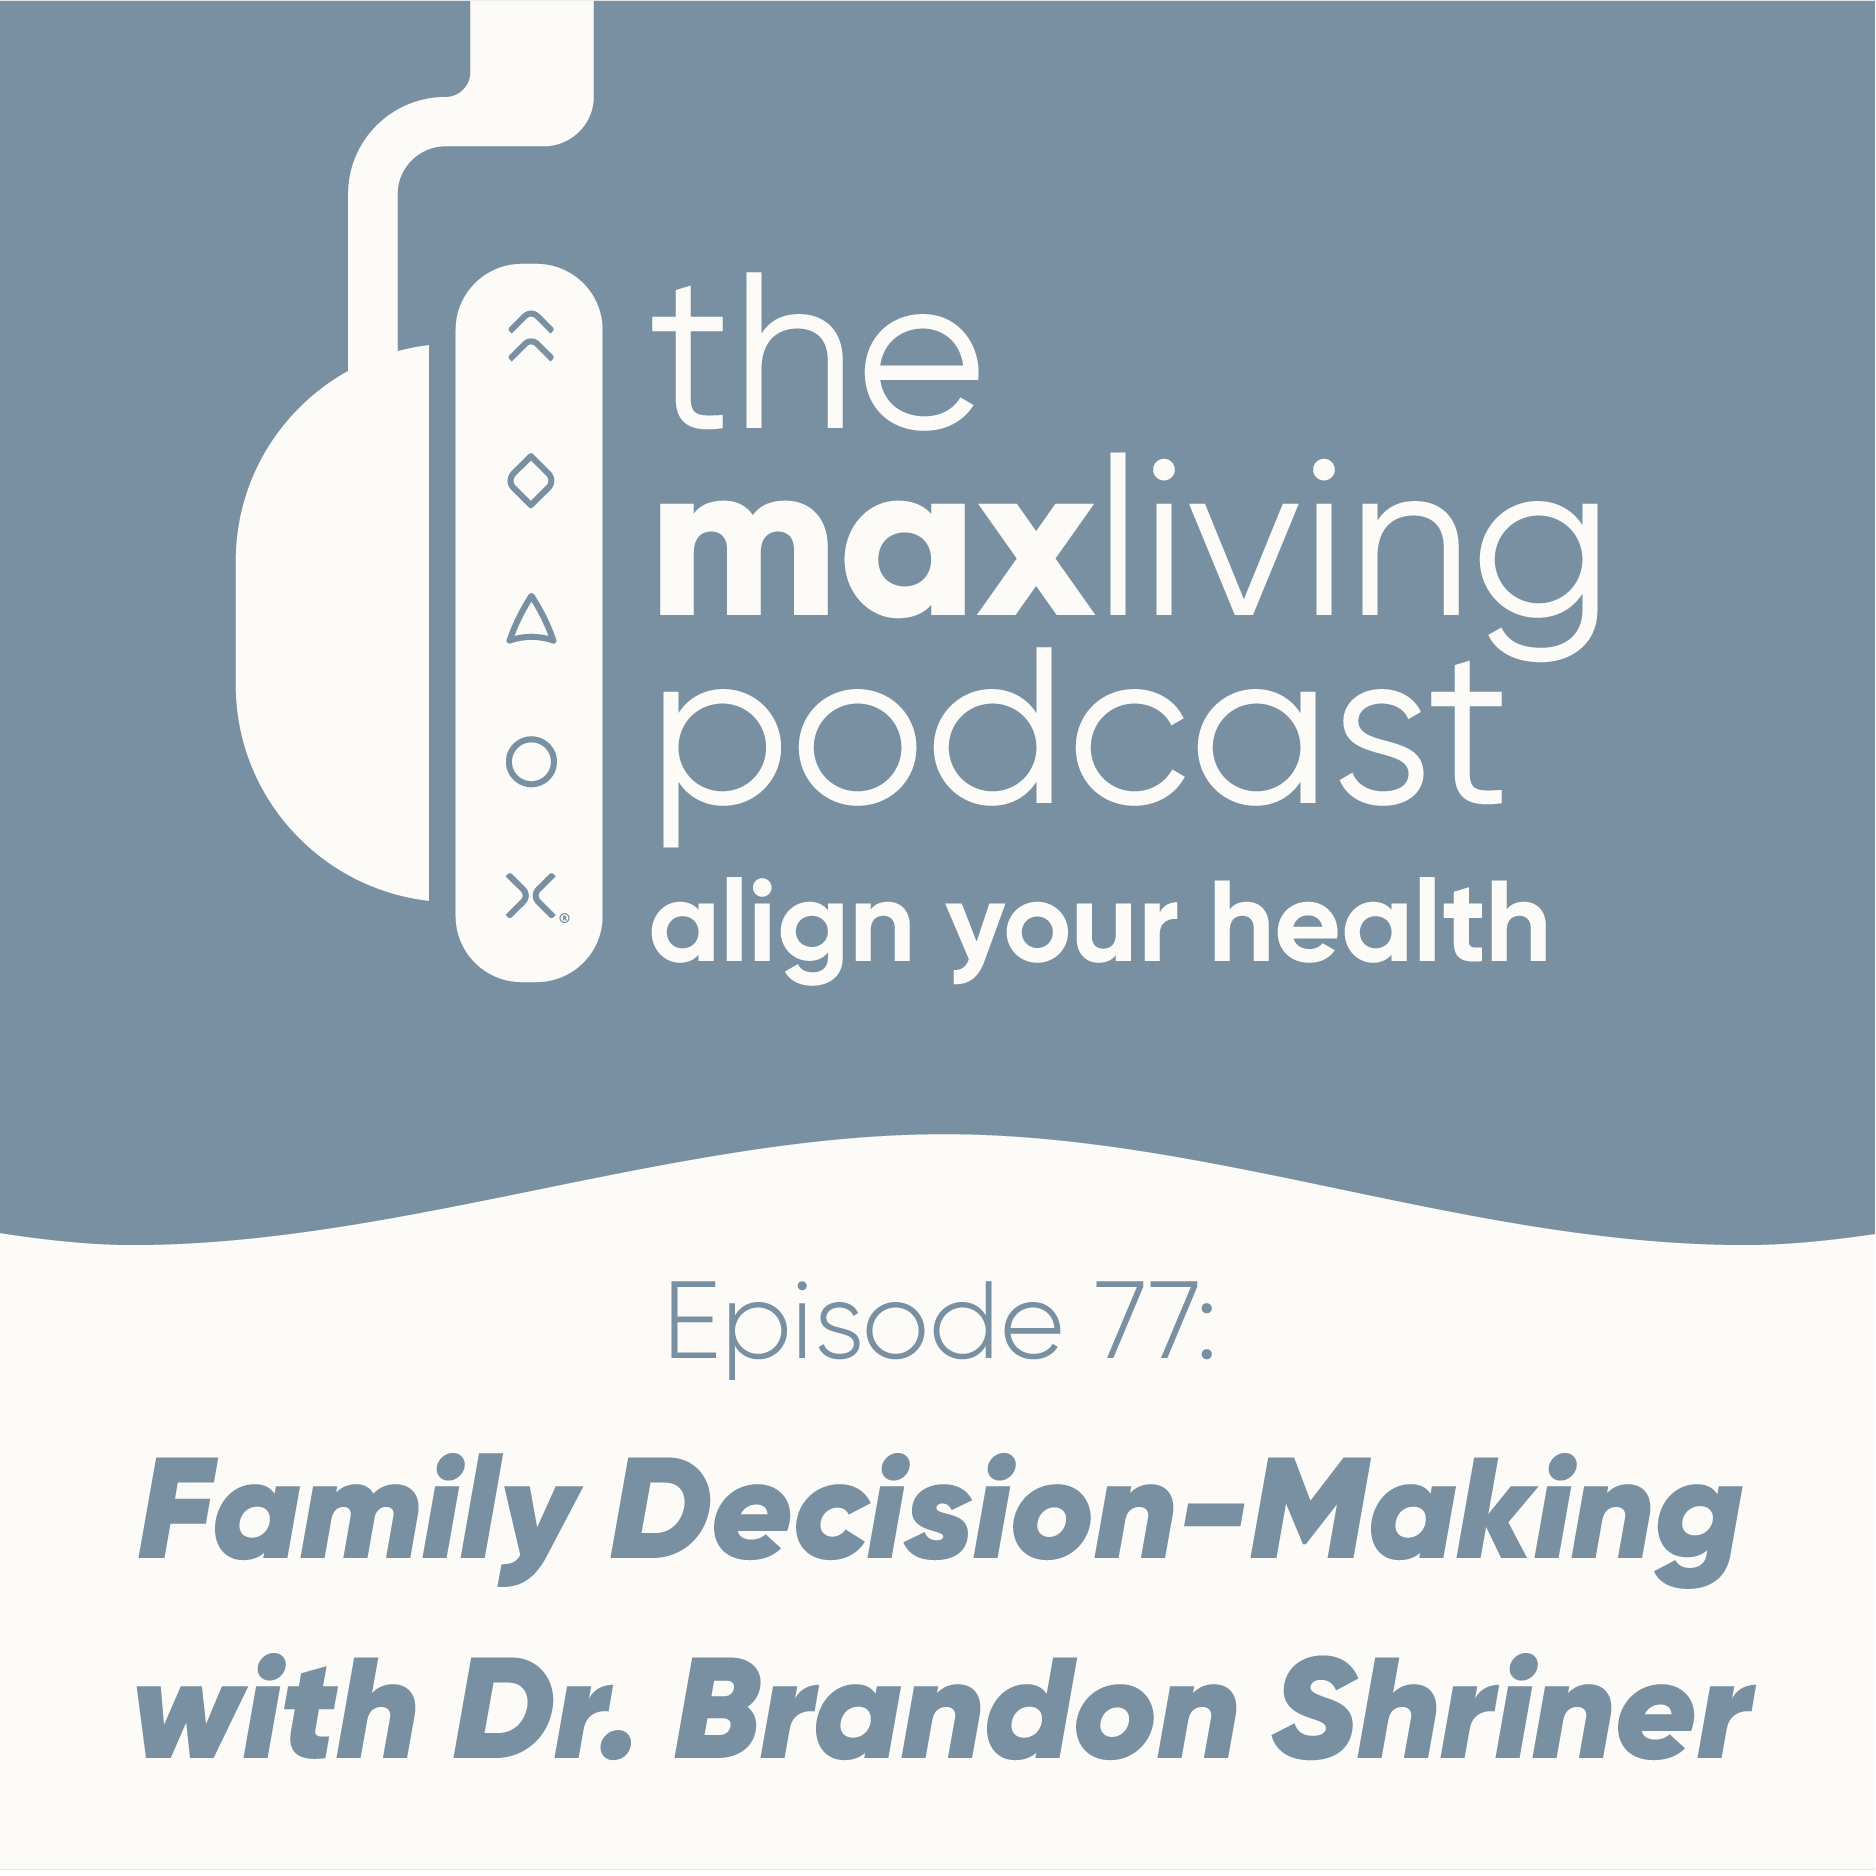 Family Decision-Making with Dr. Brandon Shriner